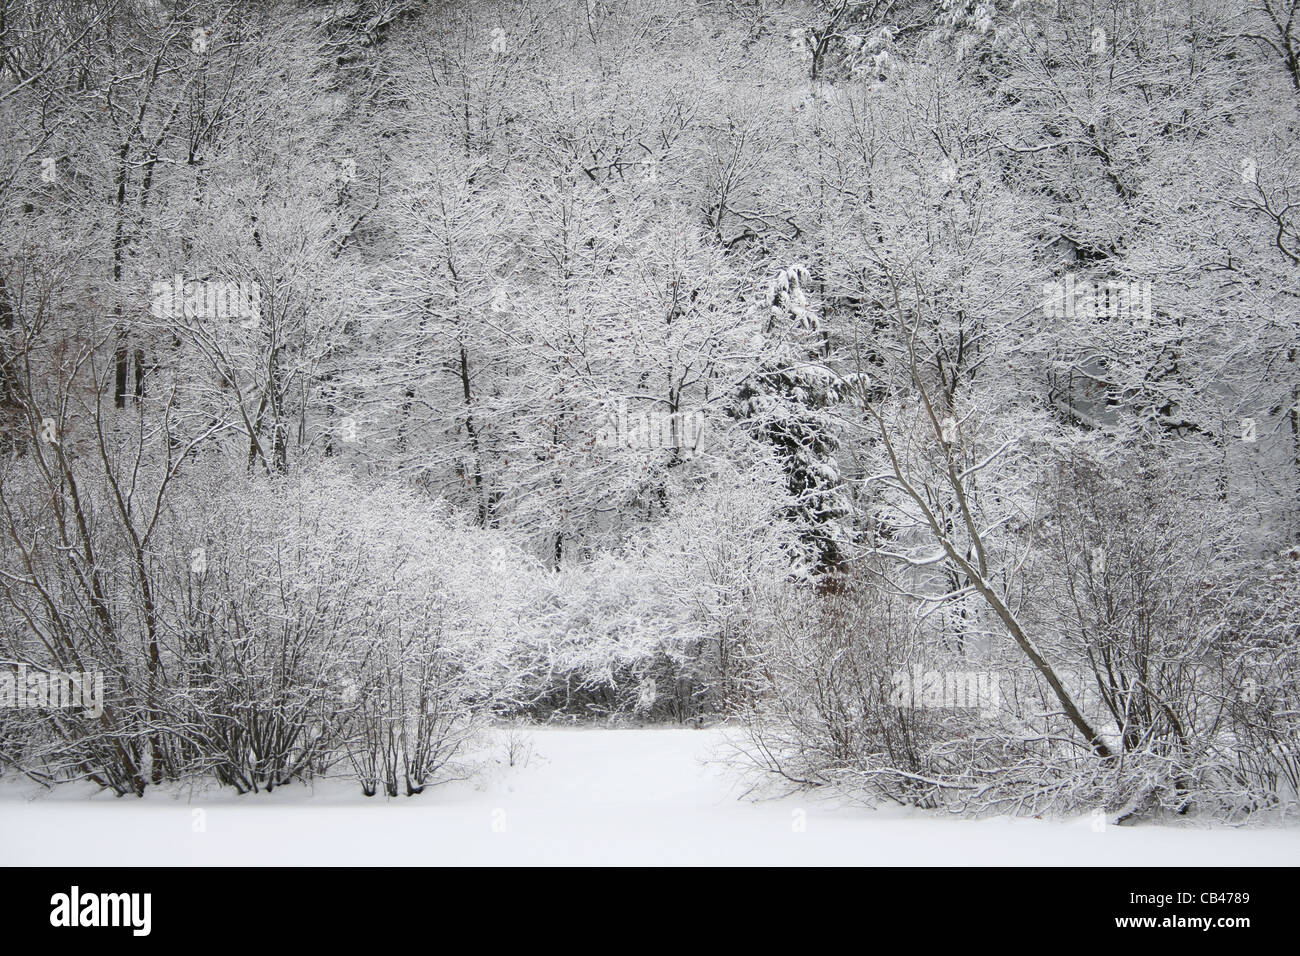 Les arbres feuillus et conifères et arbustes avec de la neige sur les branches et la masse. Image à contraste élevé. Banque D'Images